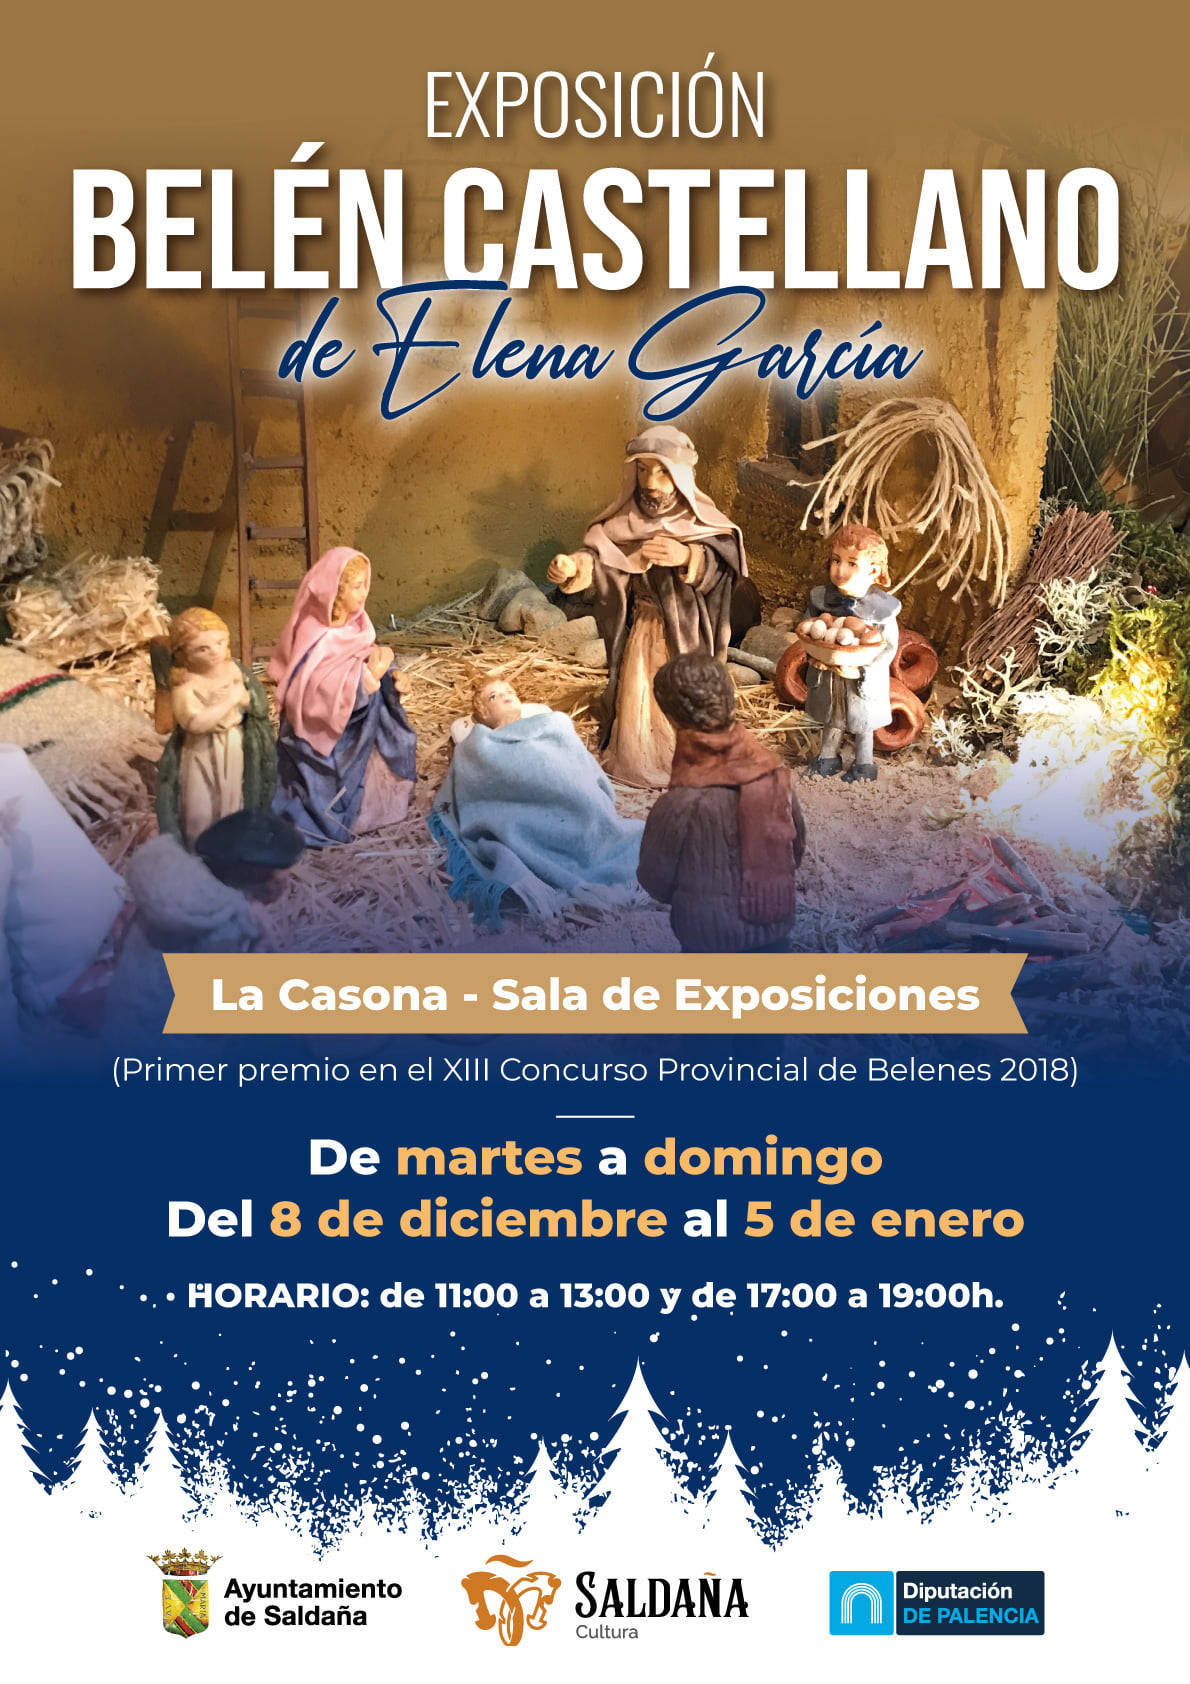 Exposición 'Belén castellano' (2021-2022) - Saldaña (Palencia)